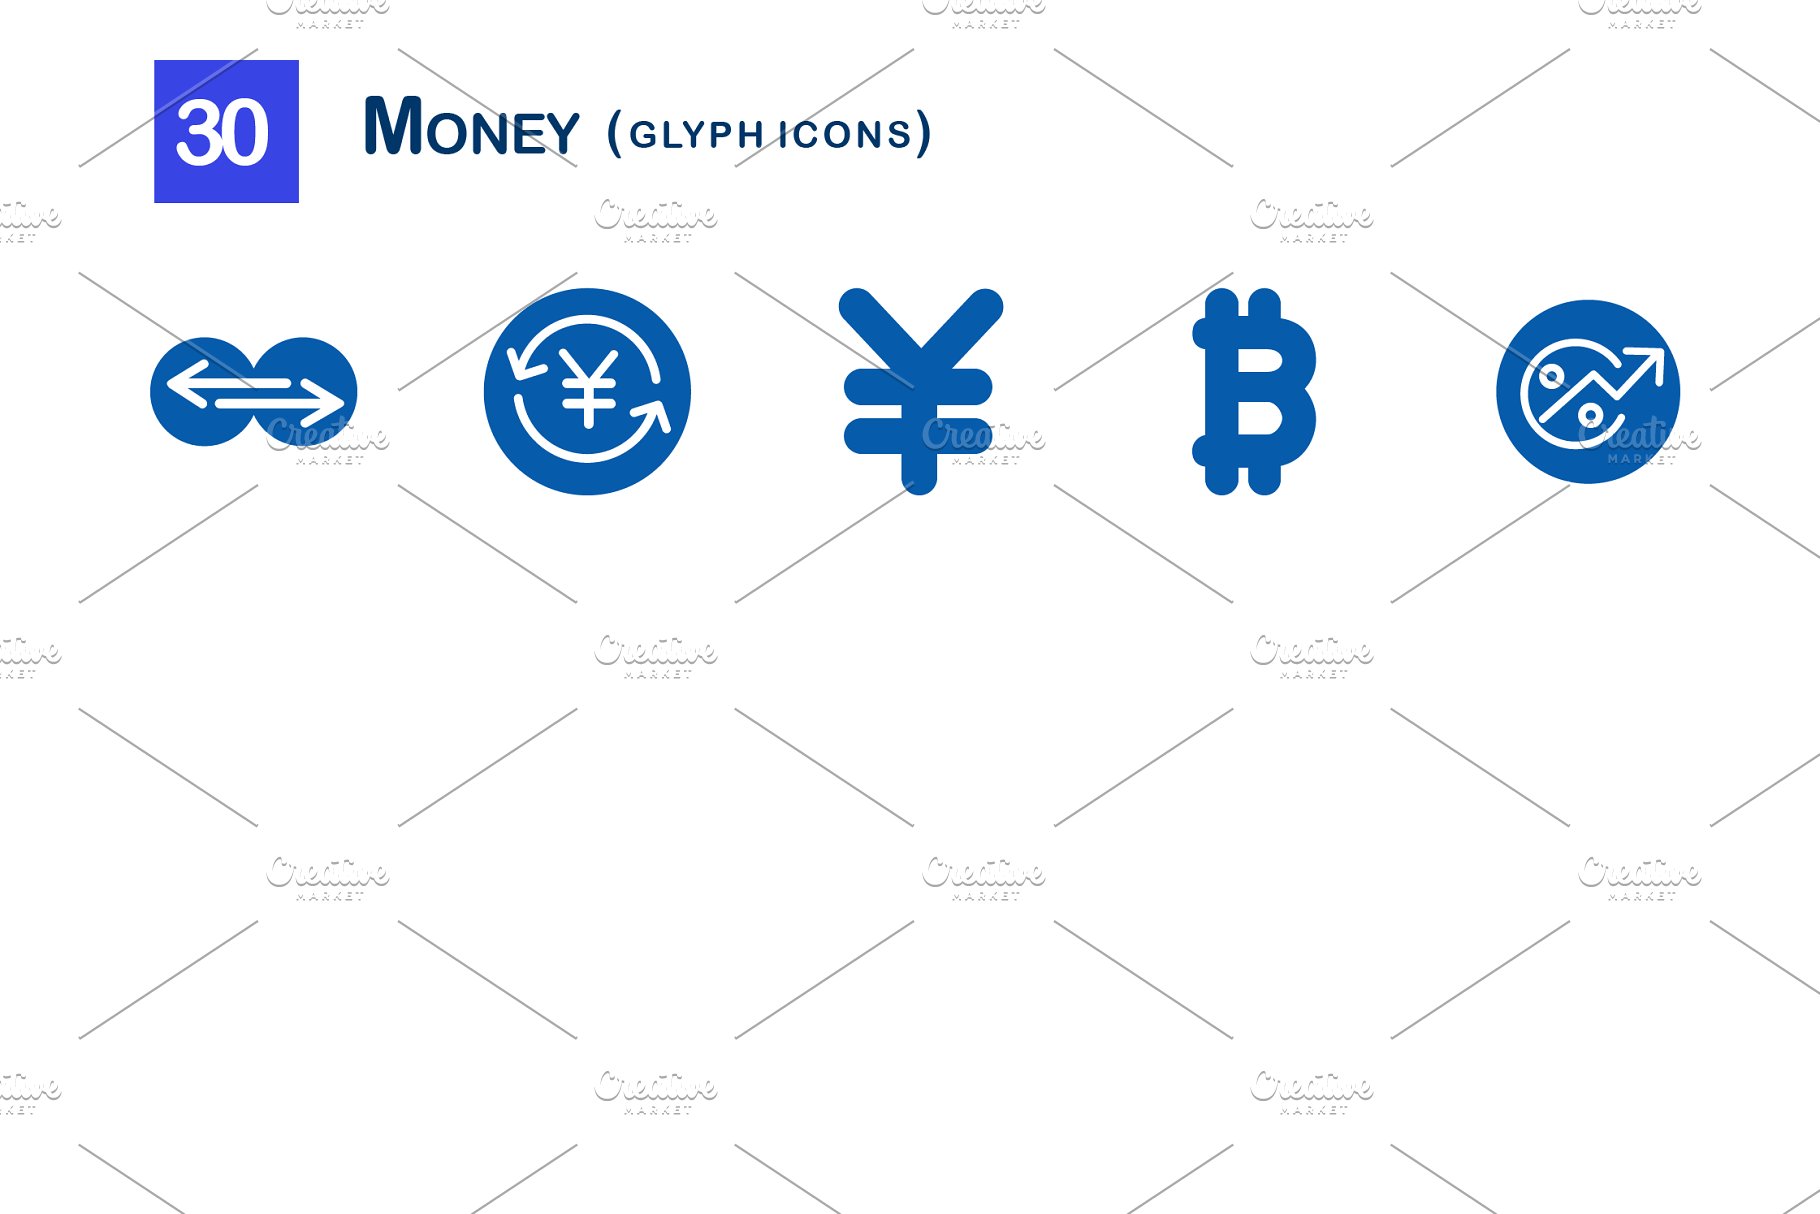 30枚投资金融网站APP字体图标  30 Money Glyph Icons插图(2)